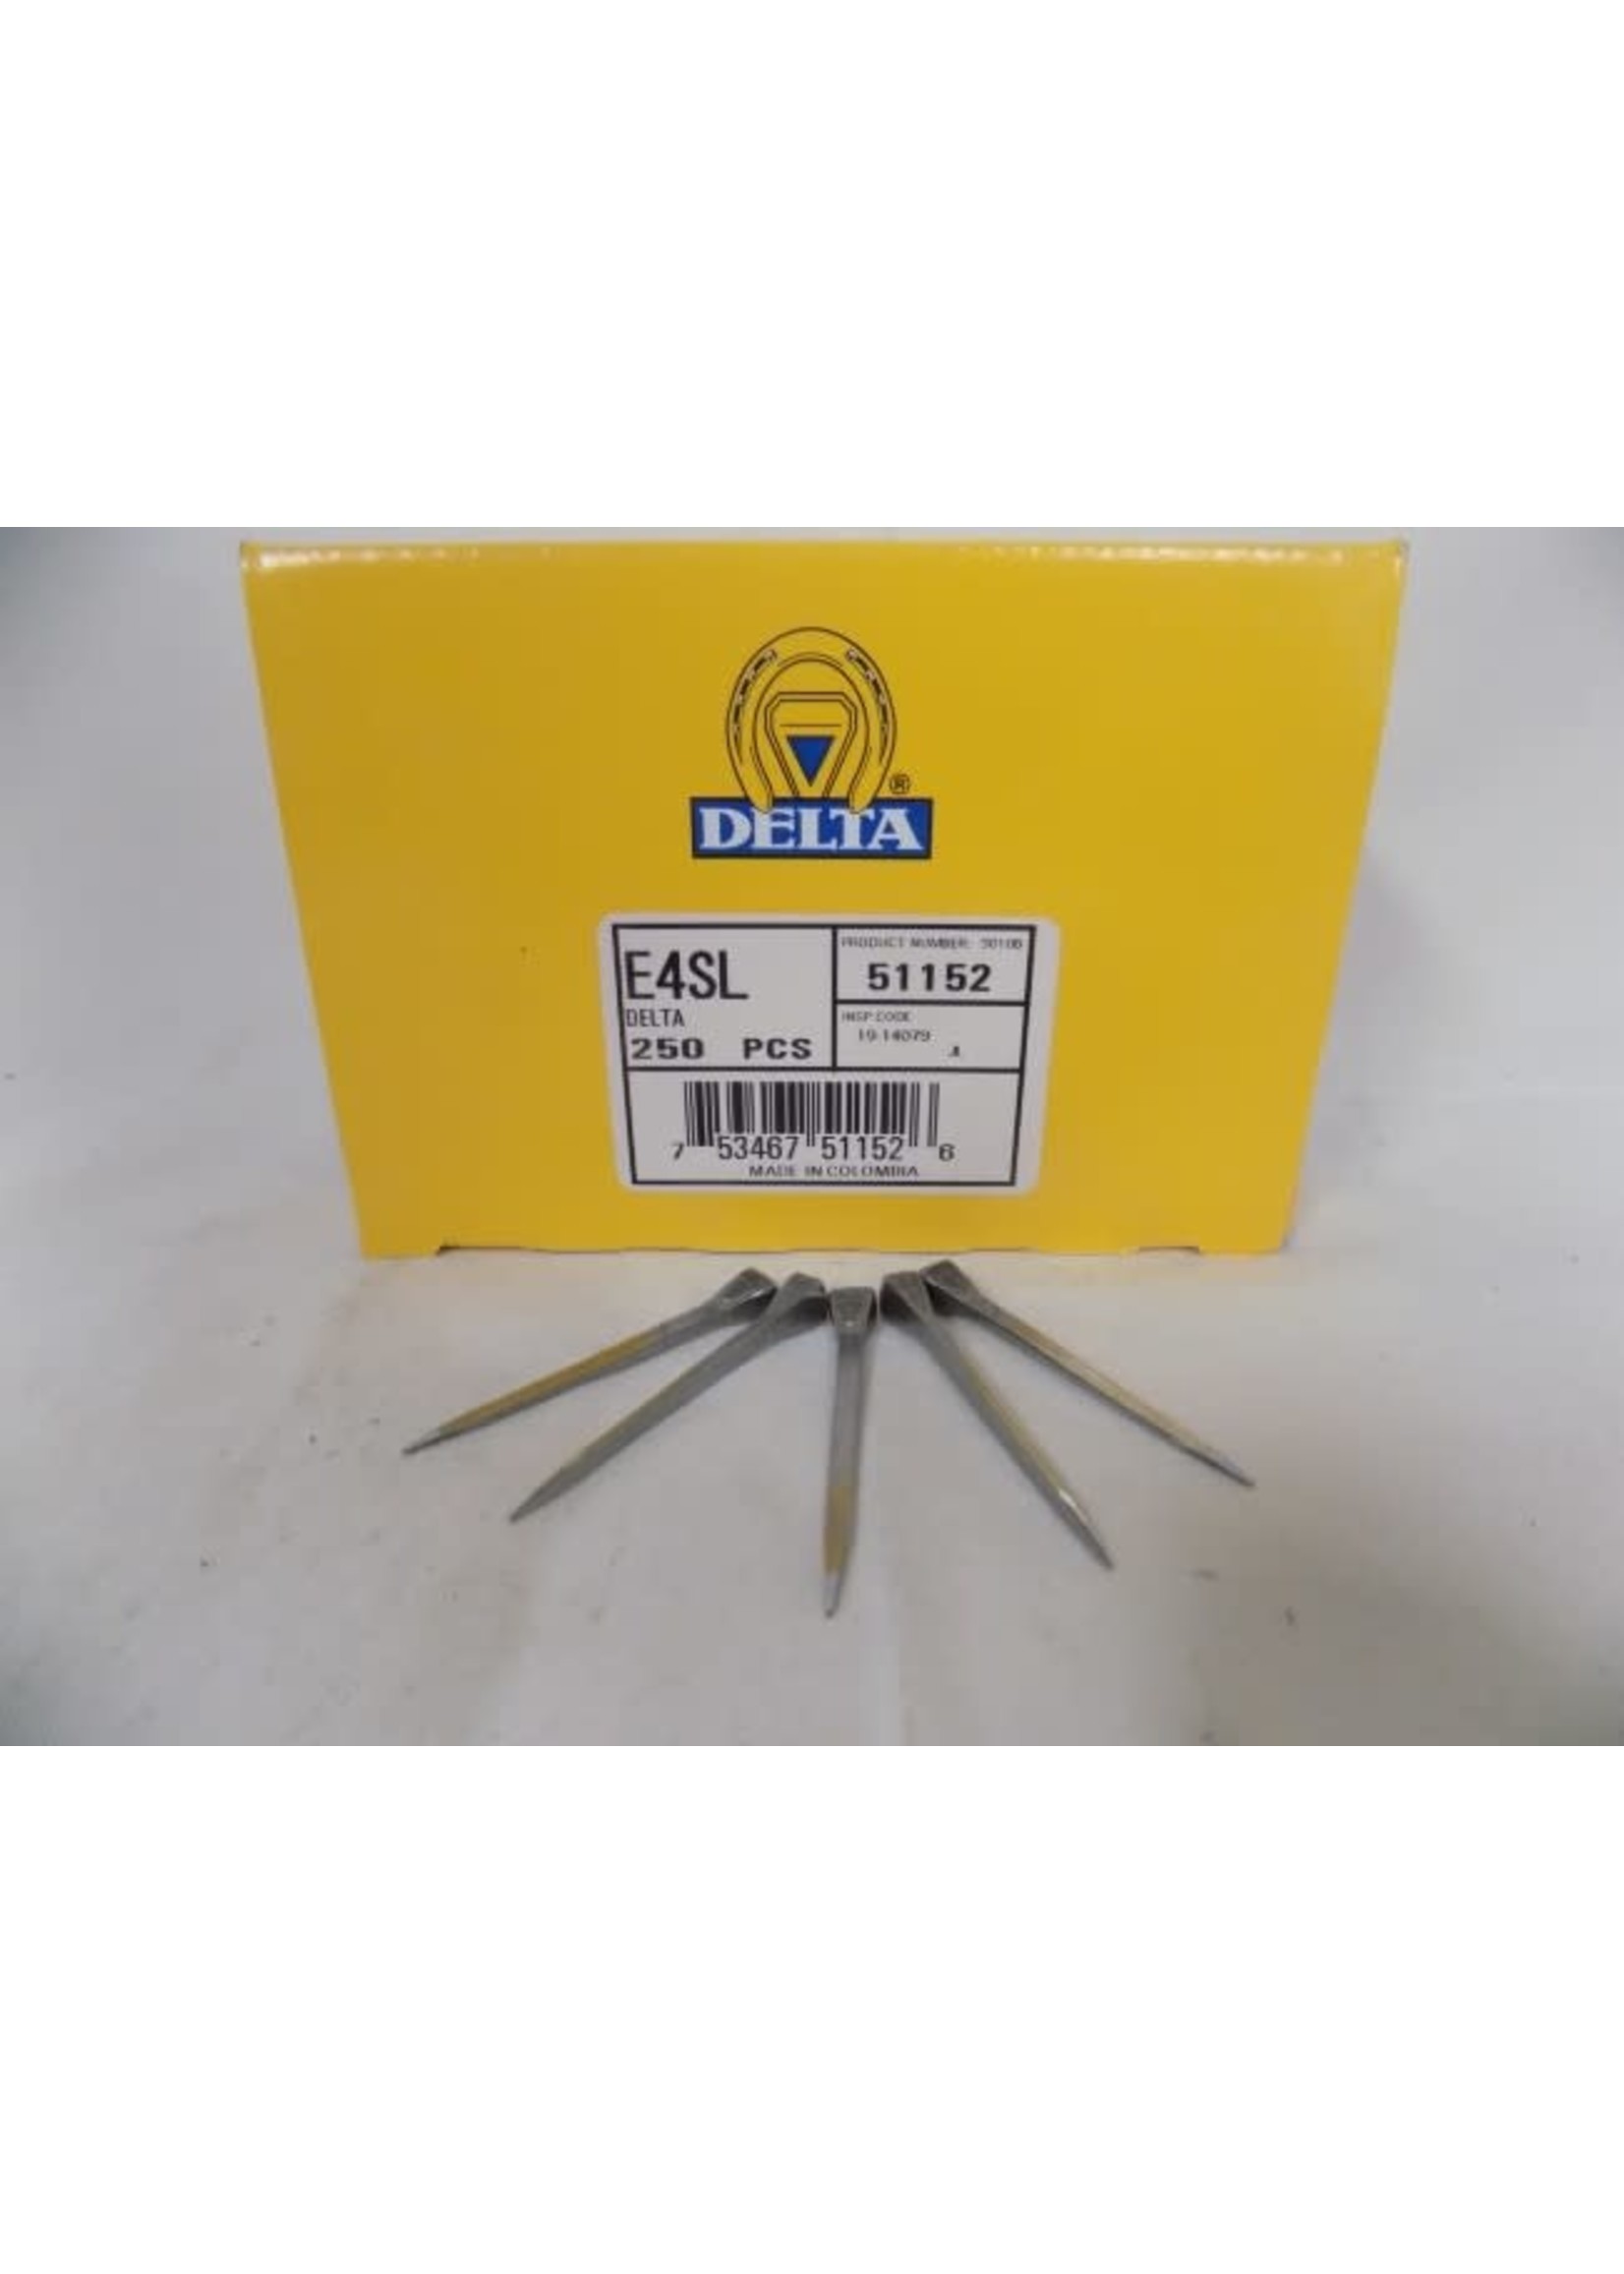 Delta Delta E4 Slim nails x 250 count box